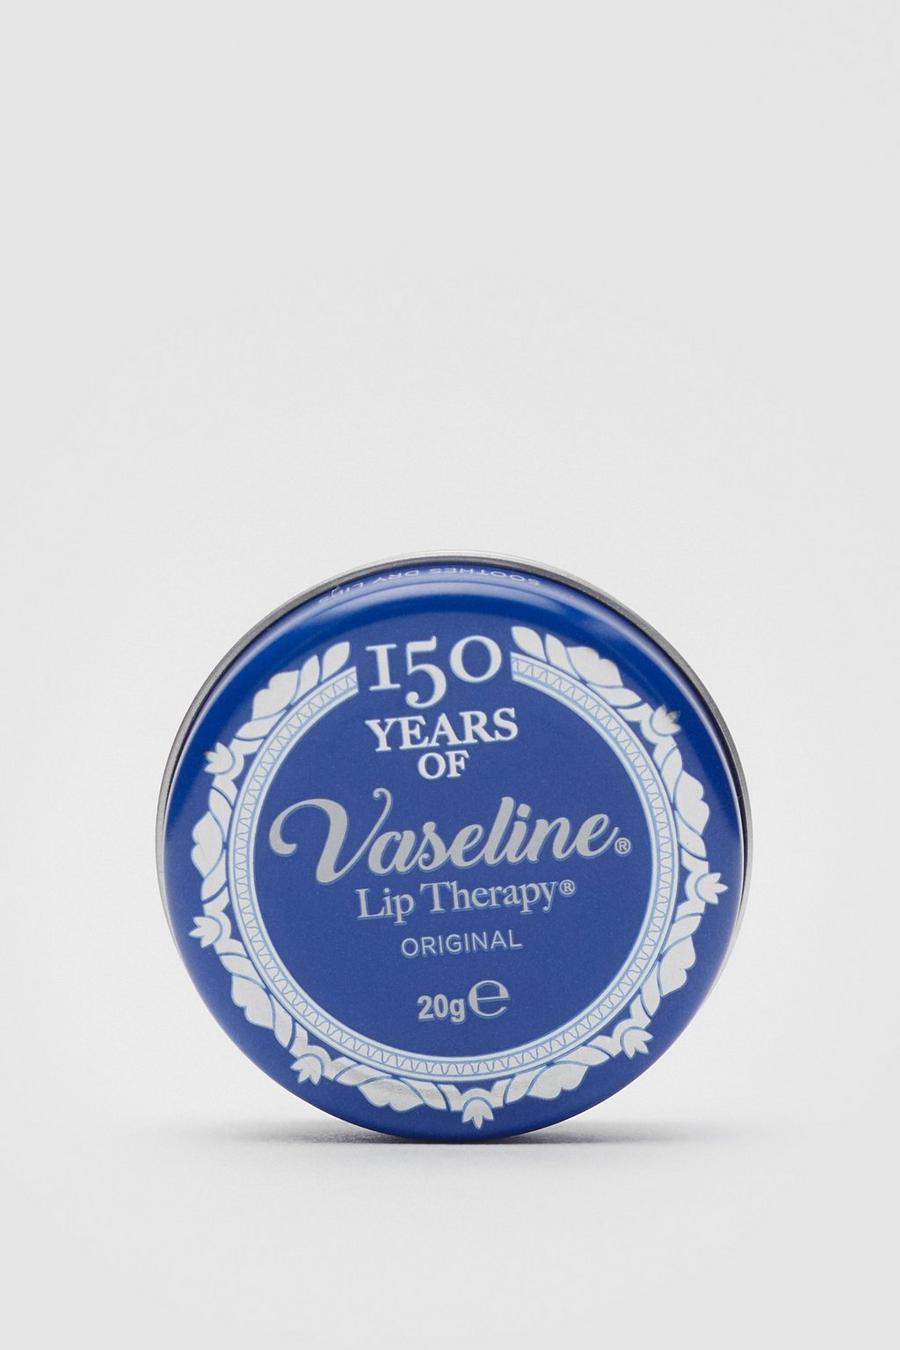 Blue Vaseline Origional Lip Therapy Lip Balm